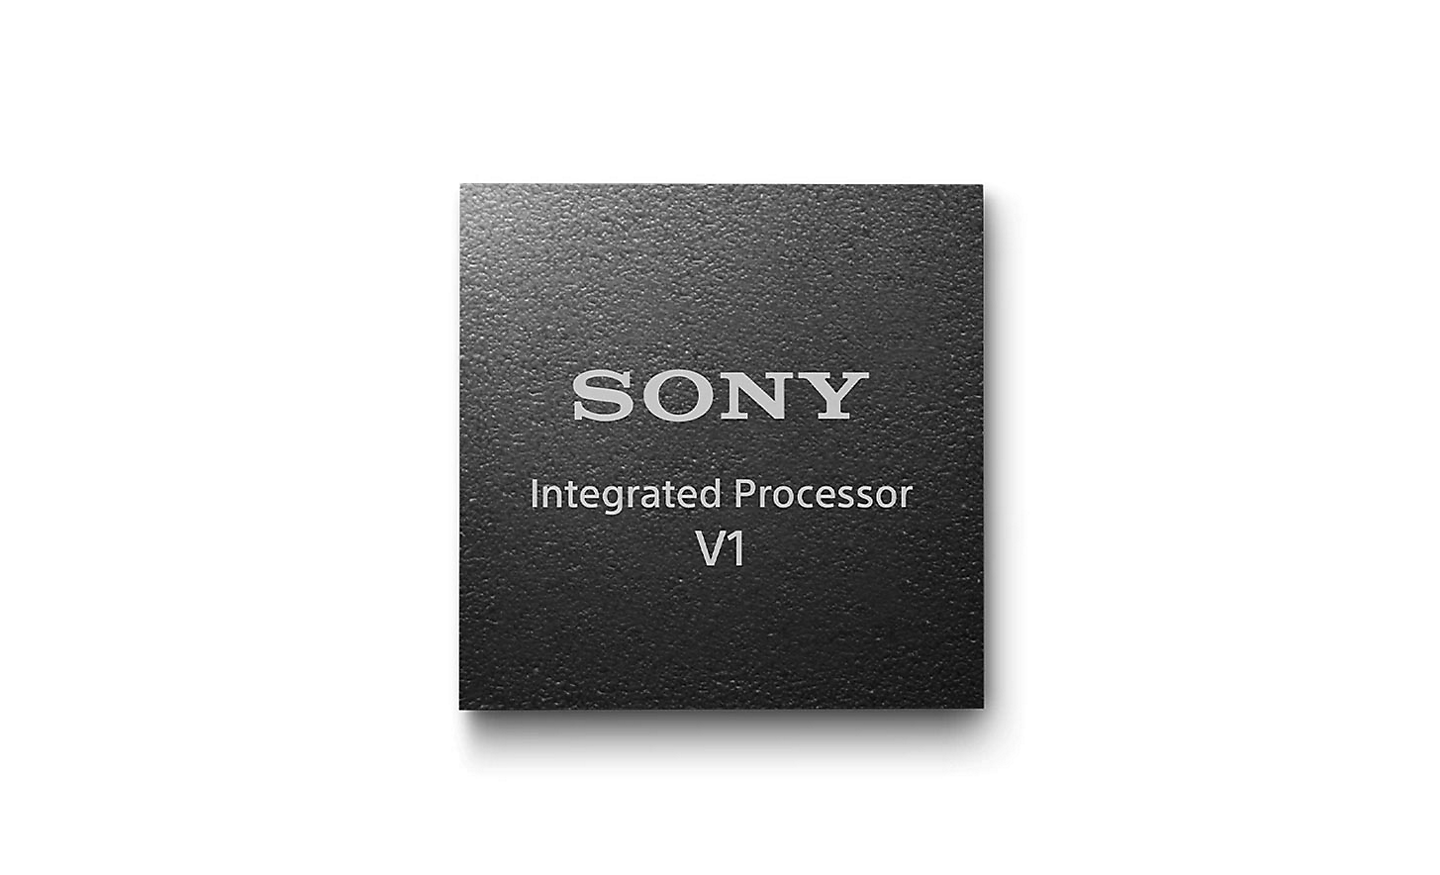 ภาพ Integrated Processor V1 ของ Sony